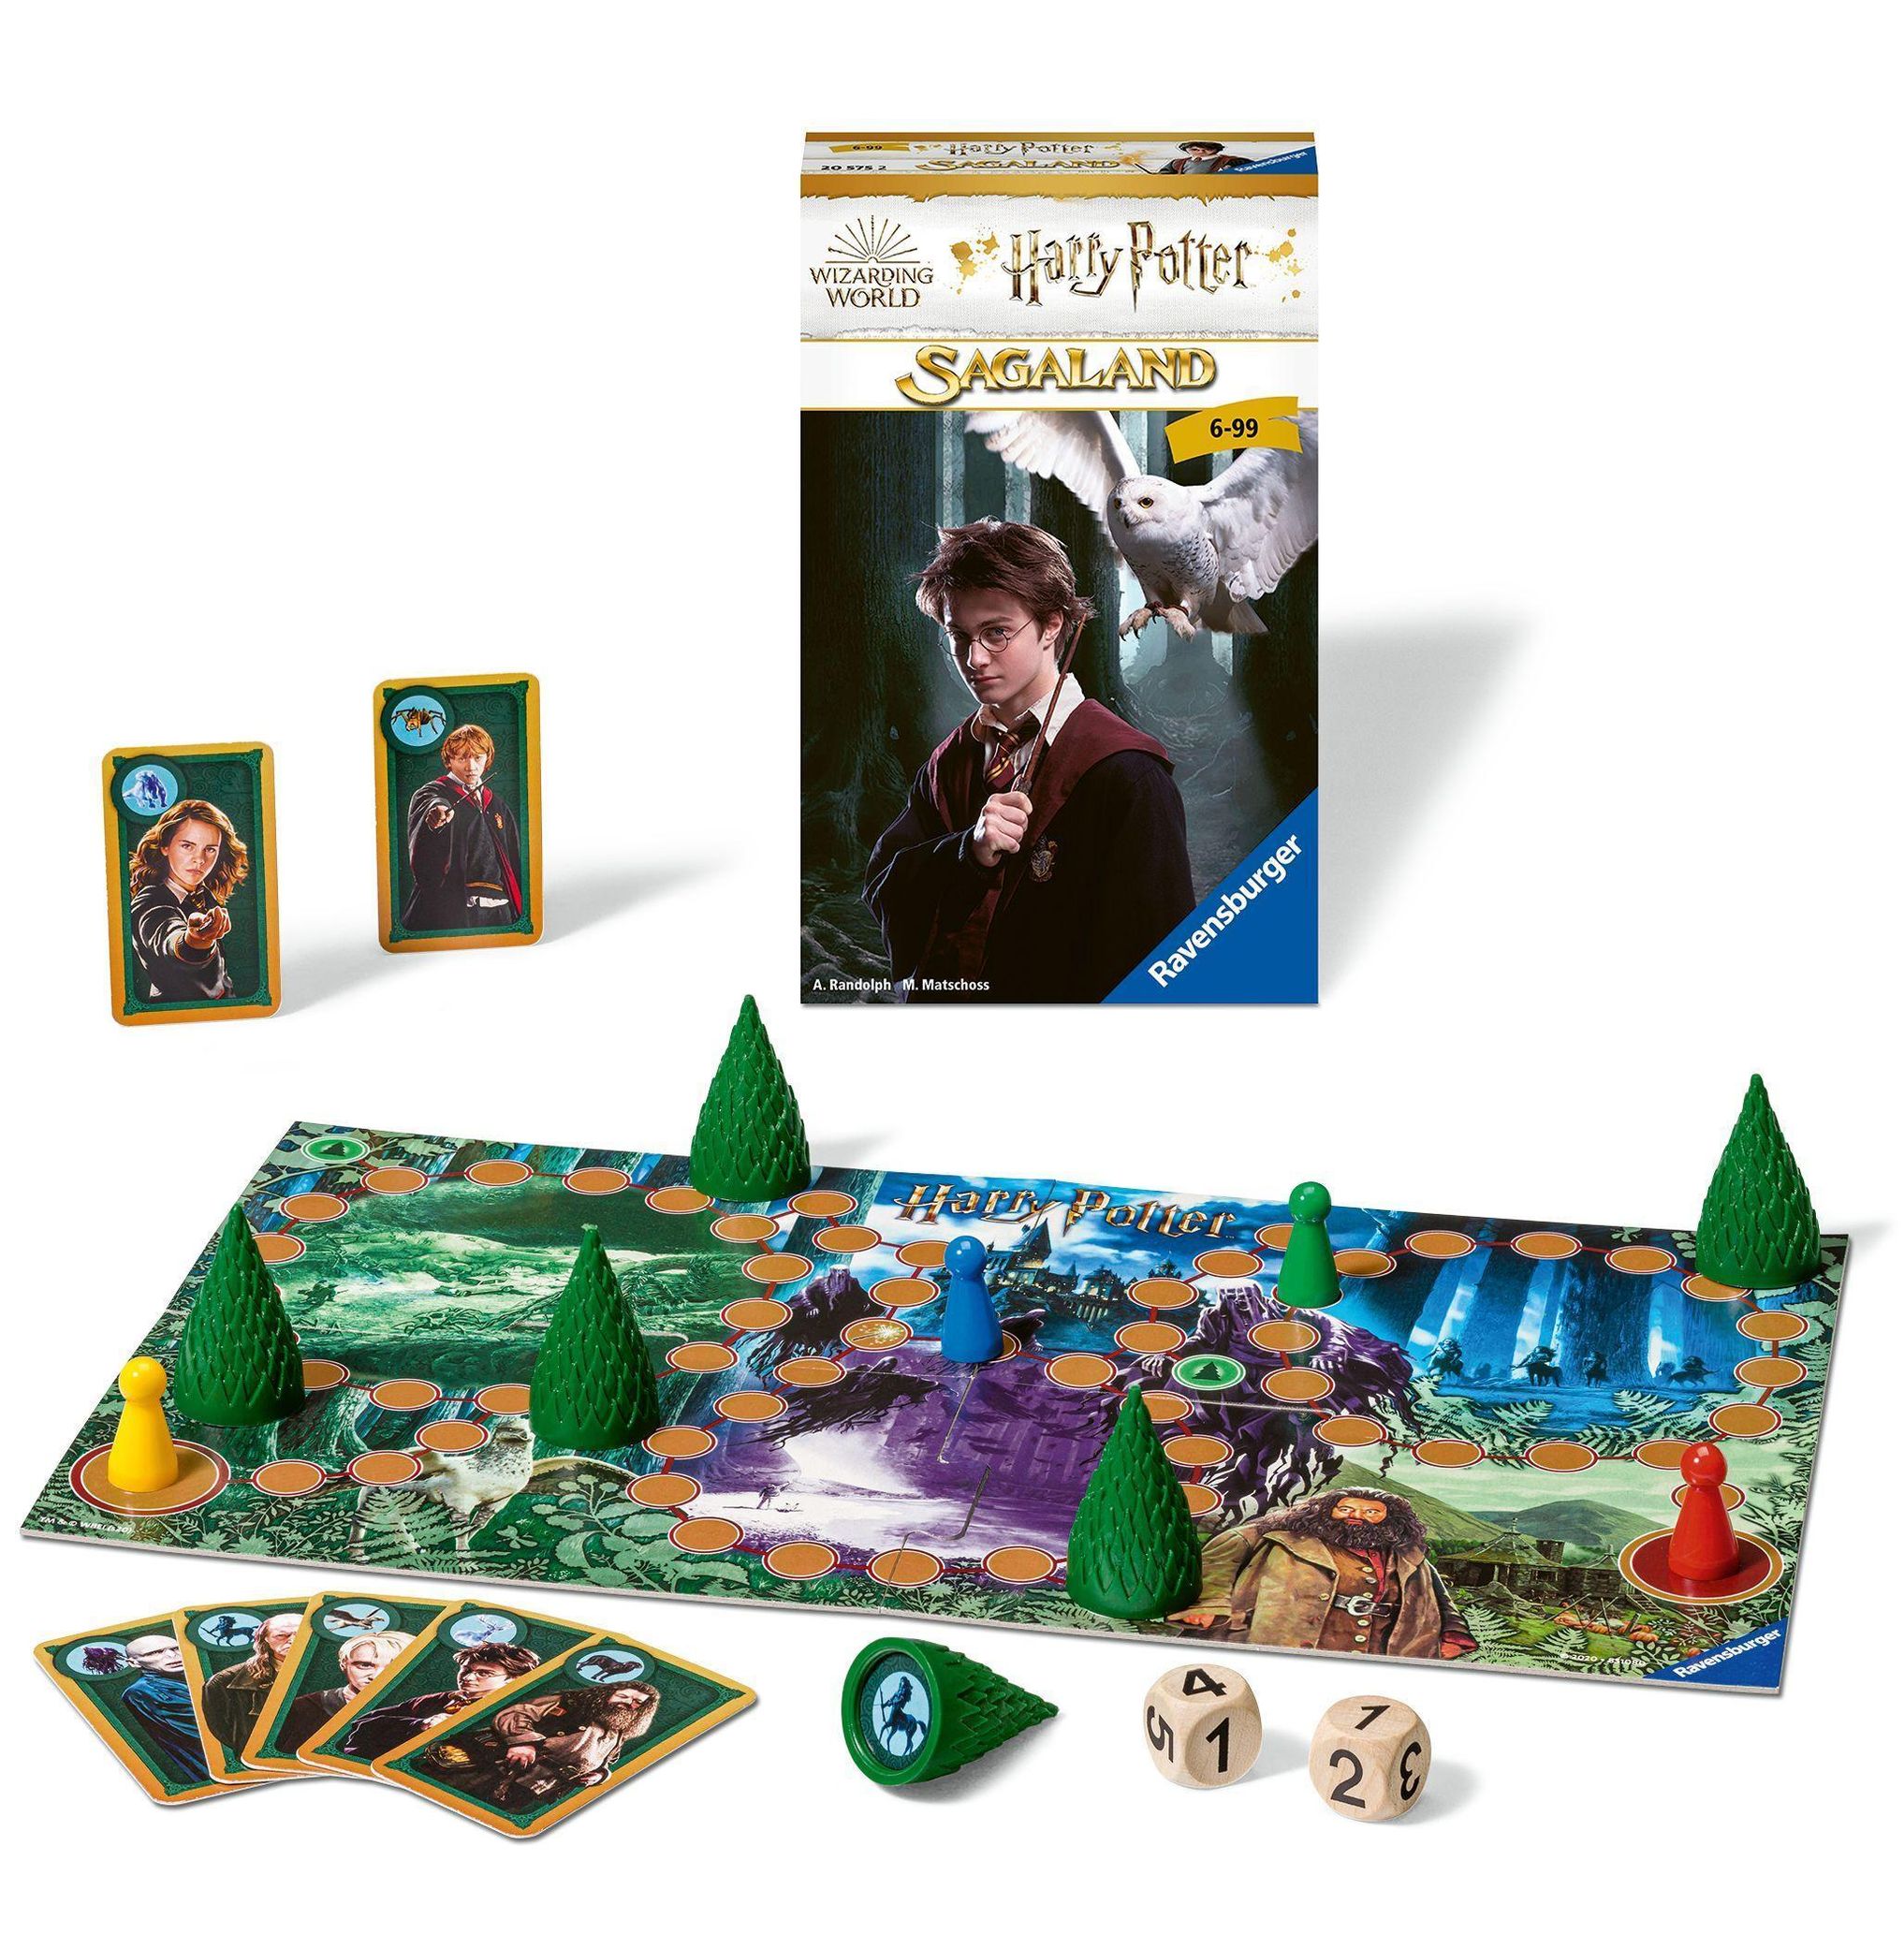 Ravensburger 20575 - Harry Potter Sagaland, Mitbringspiel für 2-4 Spieler,  ab 6 Jahren, kompaktes Format, Reisespiel, Kr